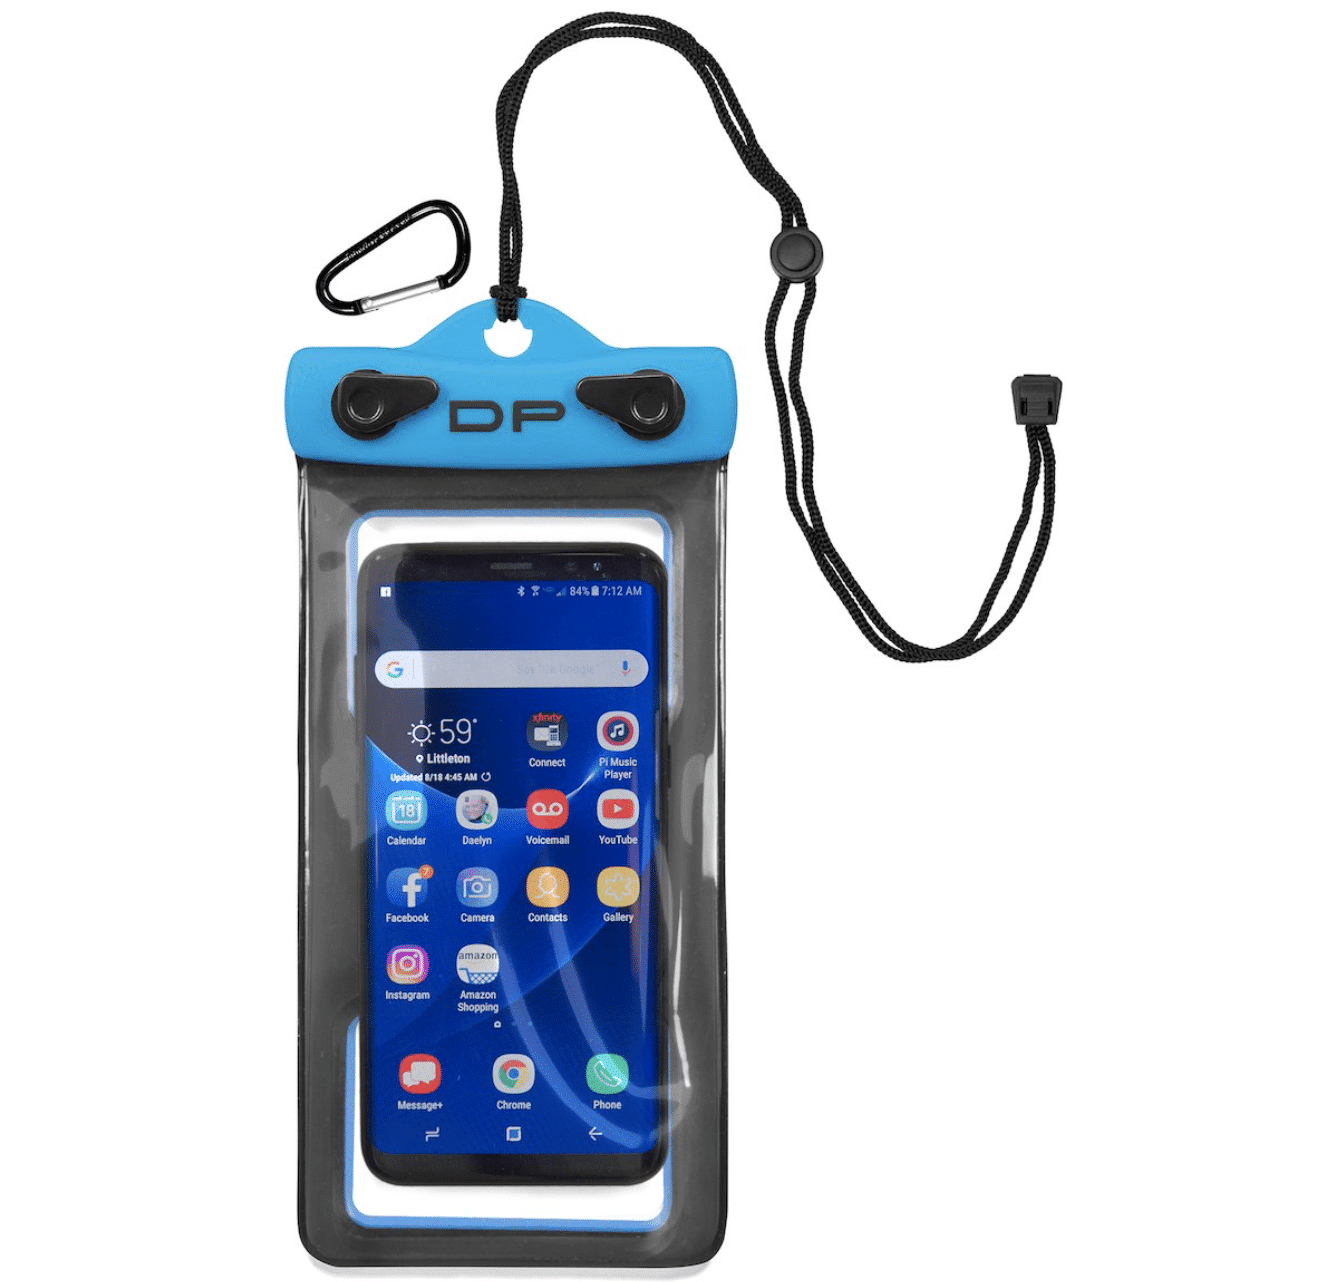 waterproof, floating phone case